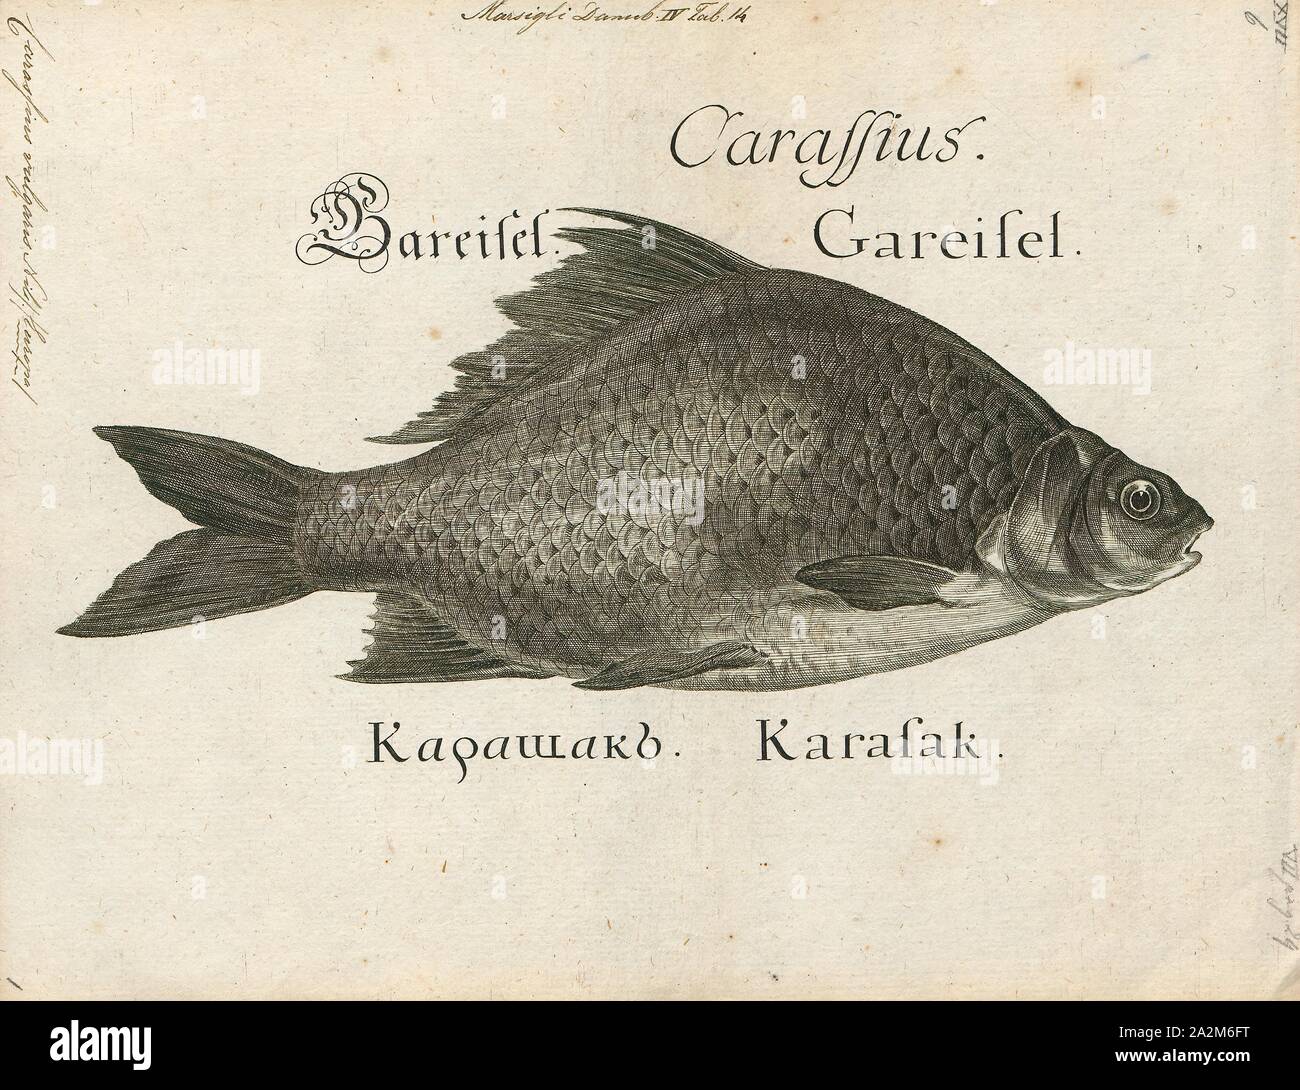 Carassius vulgaris, Imprimer, Carassius est un genre de la famille des poissons à nageoires Cyprinidae. La plupart des espèces de ce genre sont communément connus comme le carassin carpes, même si ce terme est souvent précisément référence à C. carassius. Le plus connu est le poisson rouge (C. auratus). Ils ont une répartition eurasienne, apparemment originaires plus à l'ouest que les carpes (Cyprinus), qui comprennent la carpe commune (C. carpio)., 1726. Banque D'Images